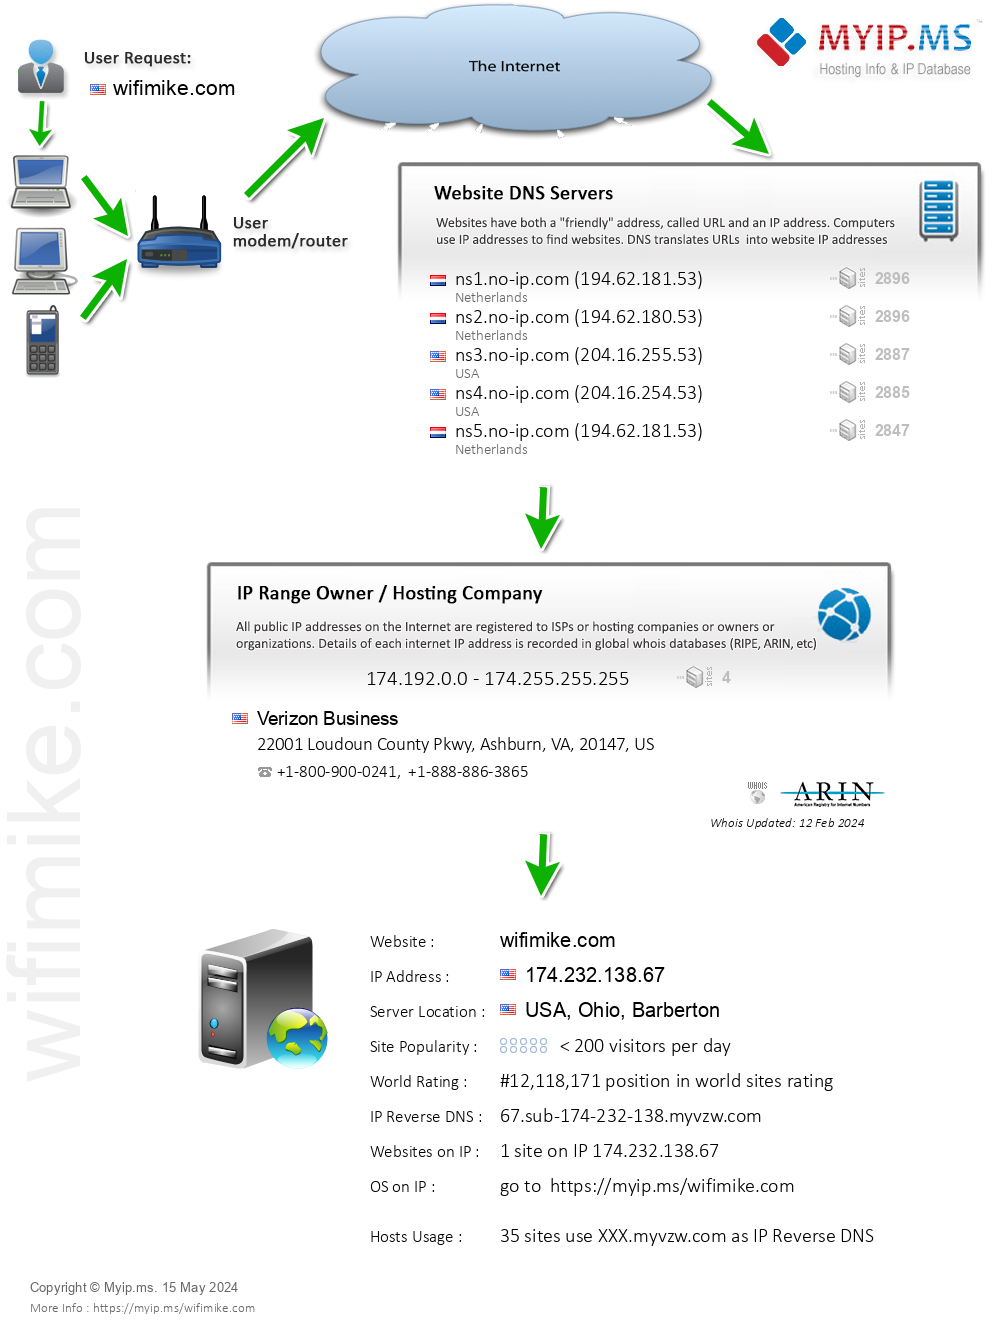 Wifimike.com - Website Hosting Visual IP Diagram